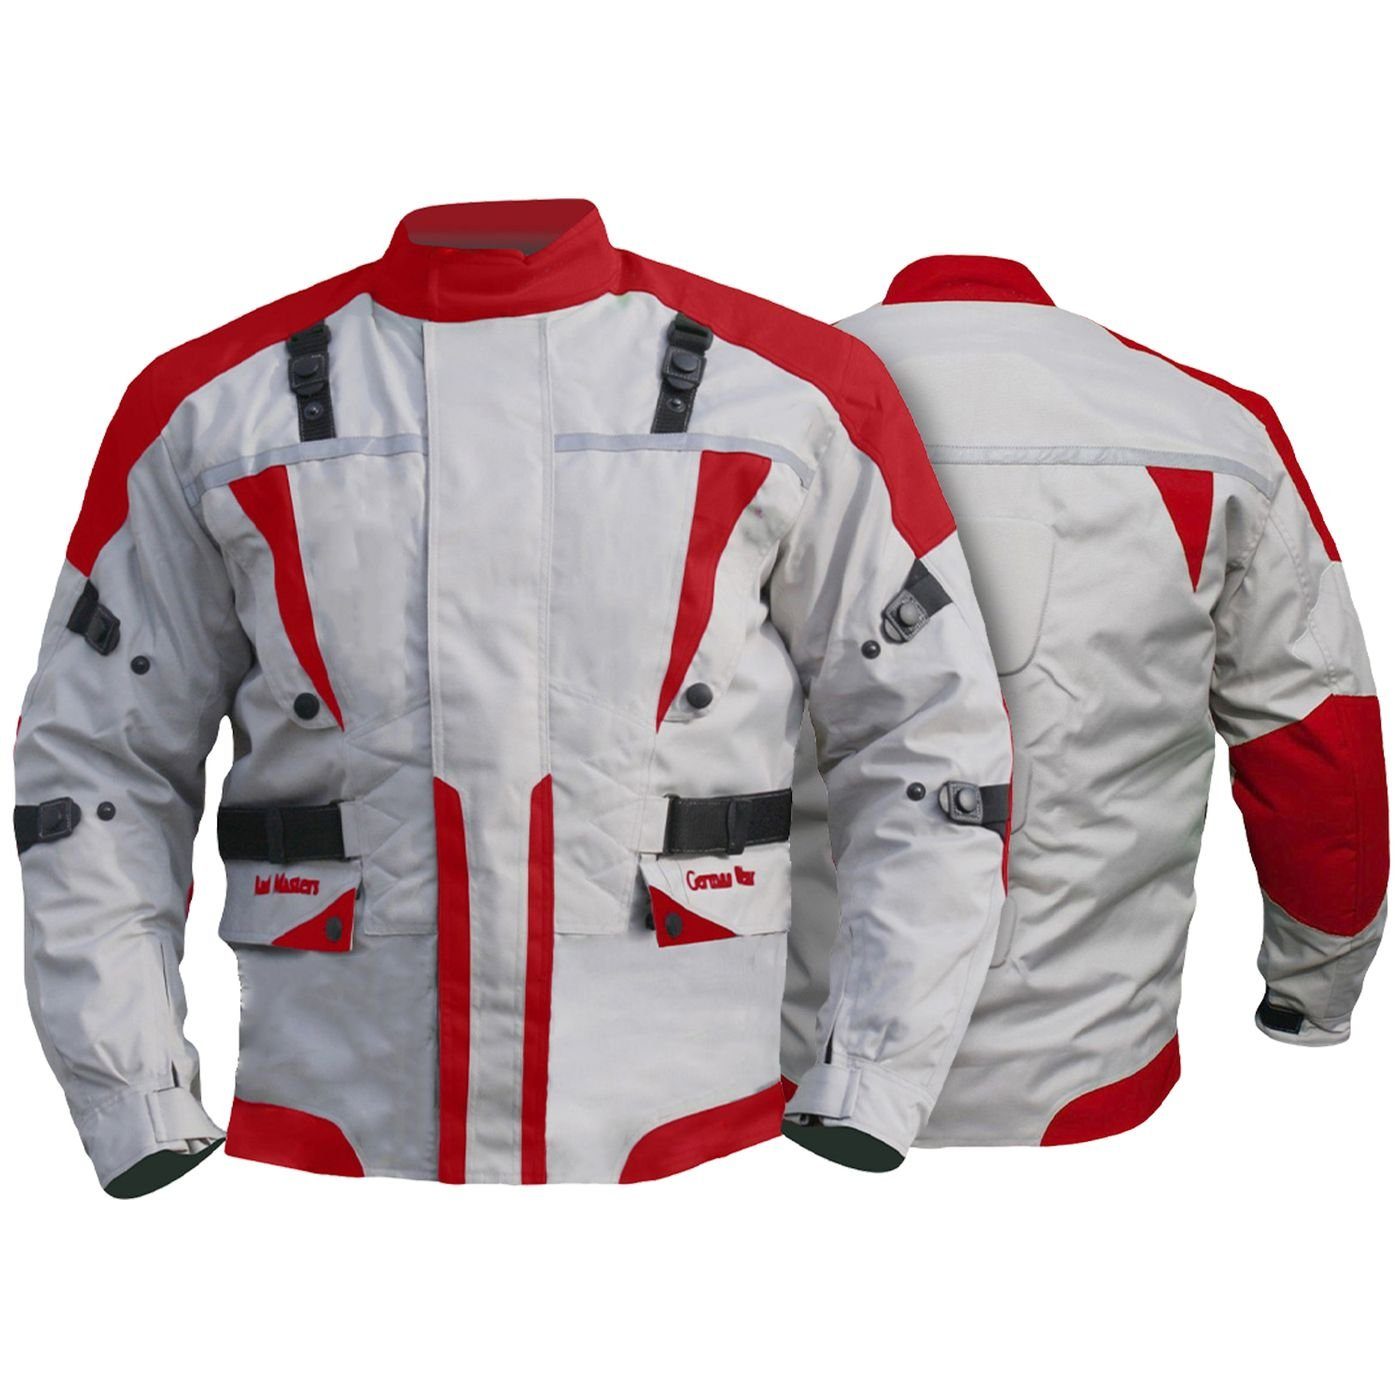 German Rot Motorradjacke Jacke Wear Motorradjacke GW309J jacke Textilien Kombigeeignet